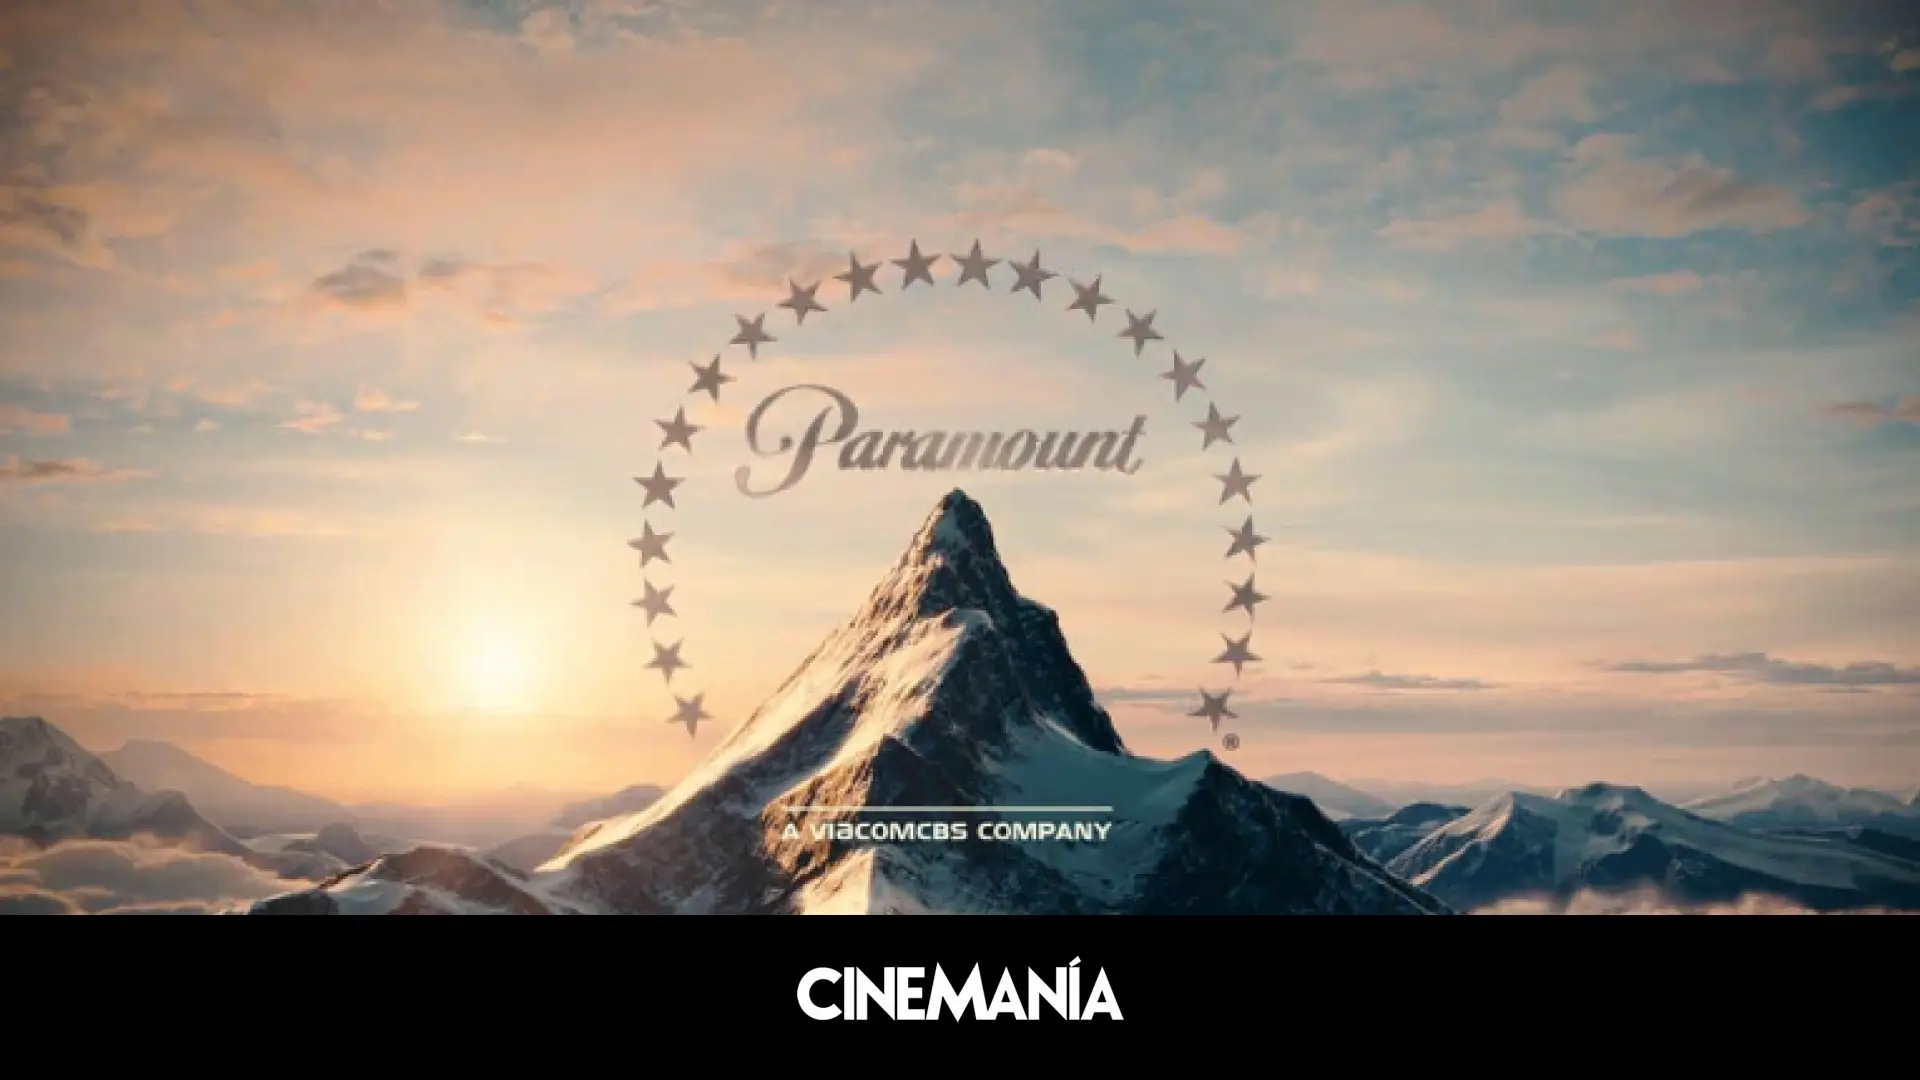 Paramount despide a su CEO mientras se espera que otro gigante de Hollywood compre el estudio